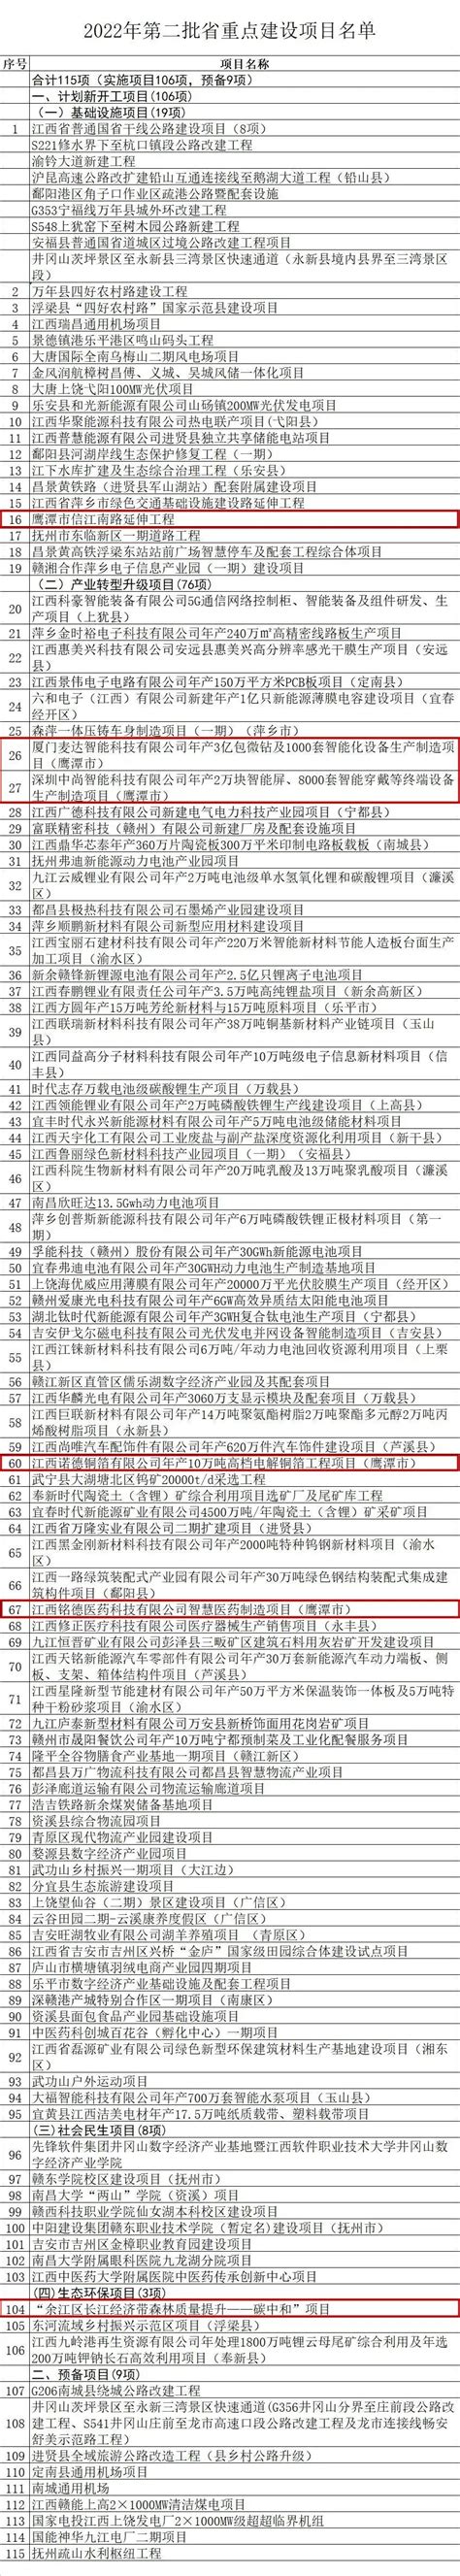 2022中外知名企业四川行丨乐山签约合作项目19个 签约金额734亿元_四川在线